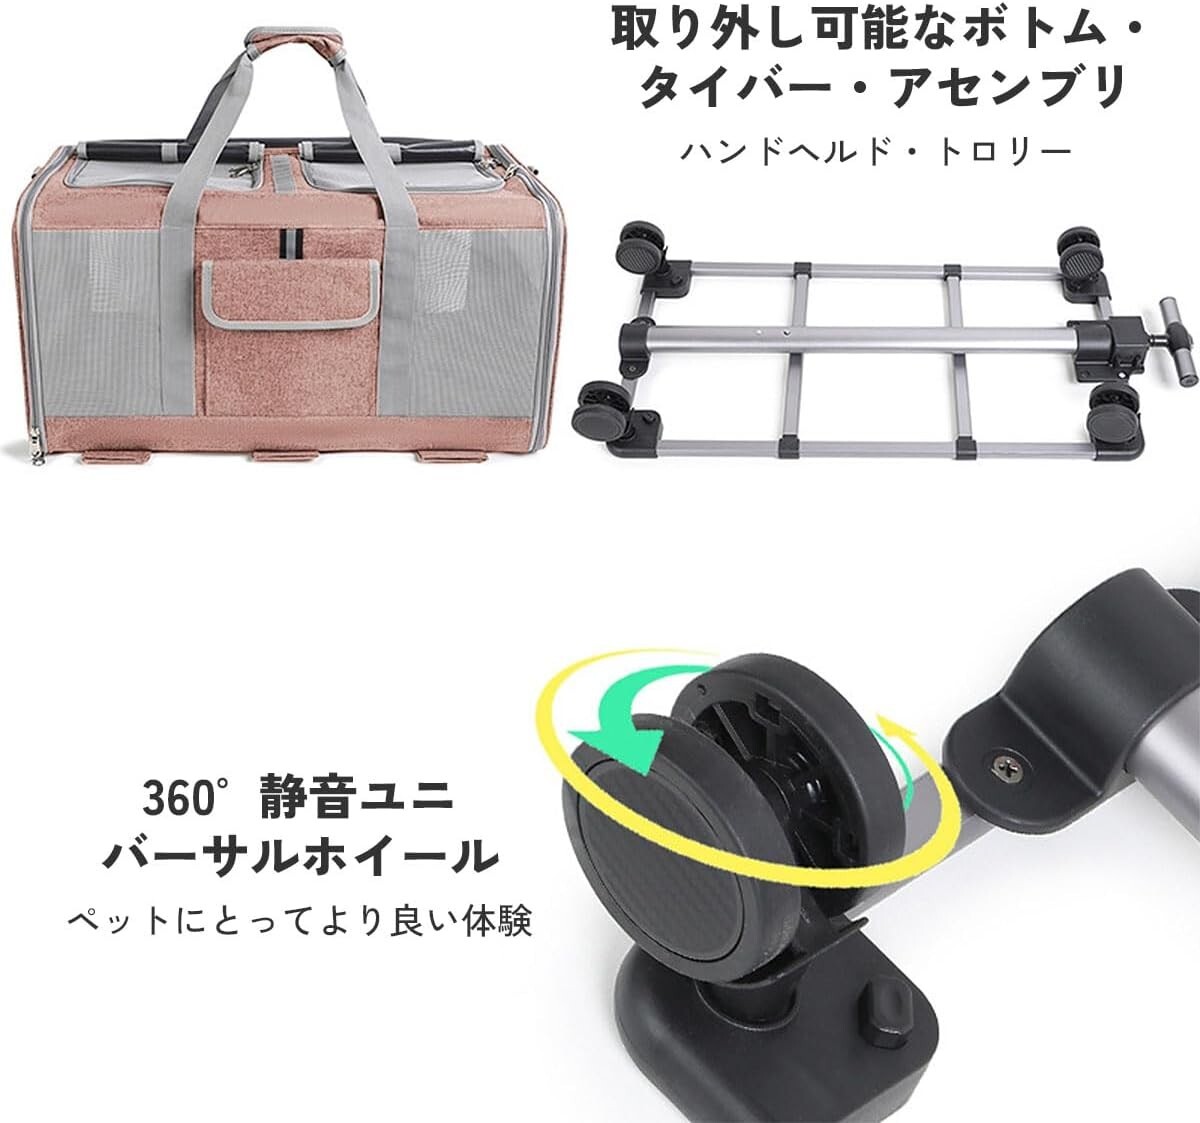  новый товар * обычная цена 9,980 иен *2 шт для 2. домашнее животное Carry кейс домашнее животное передвижная корзинка маленький размер собака средний собака 4WAY с роликами . дорожная сумка складной 